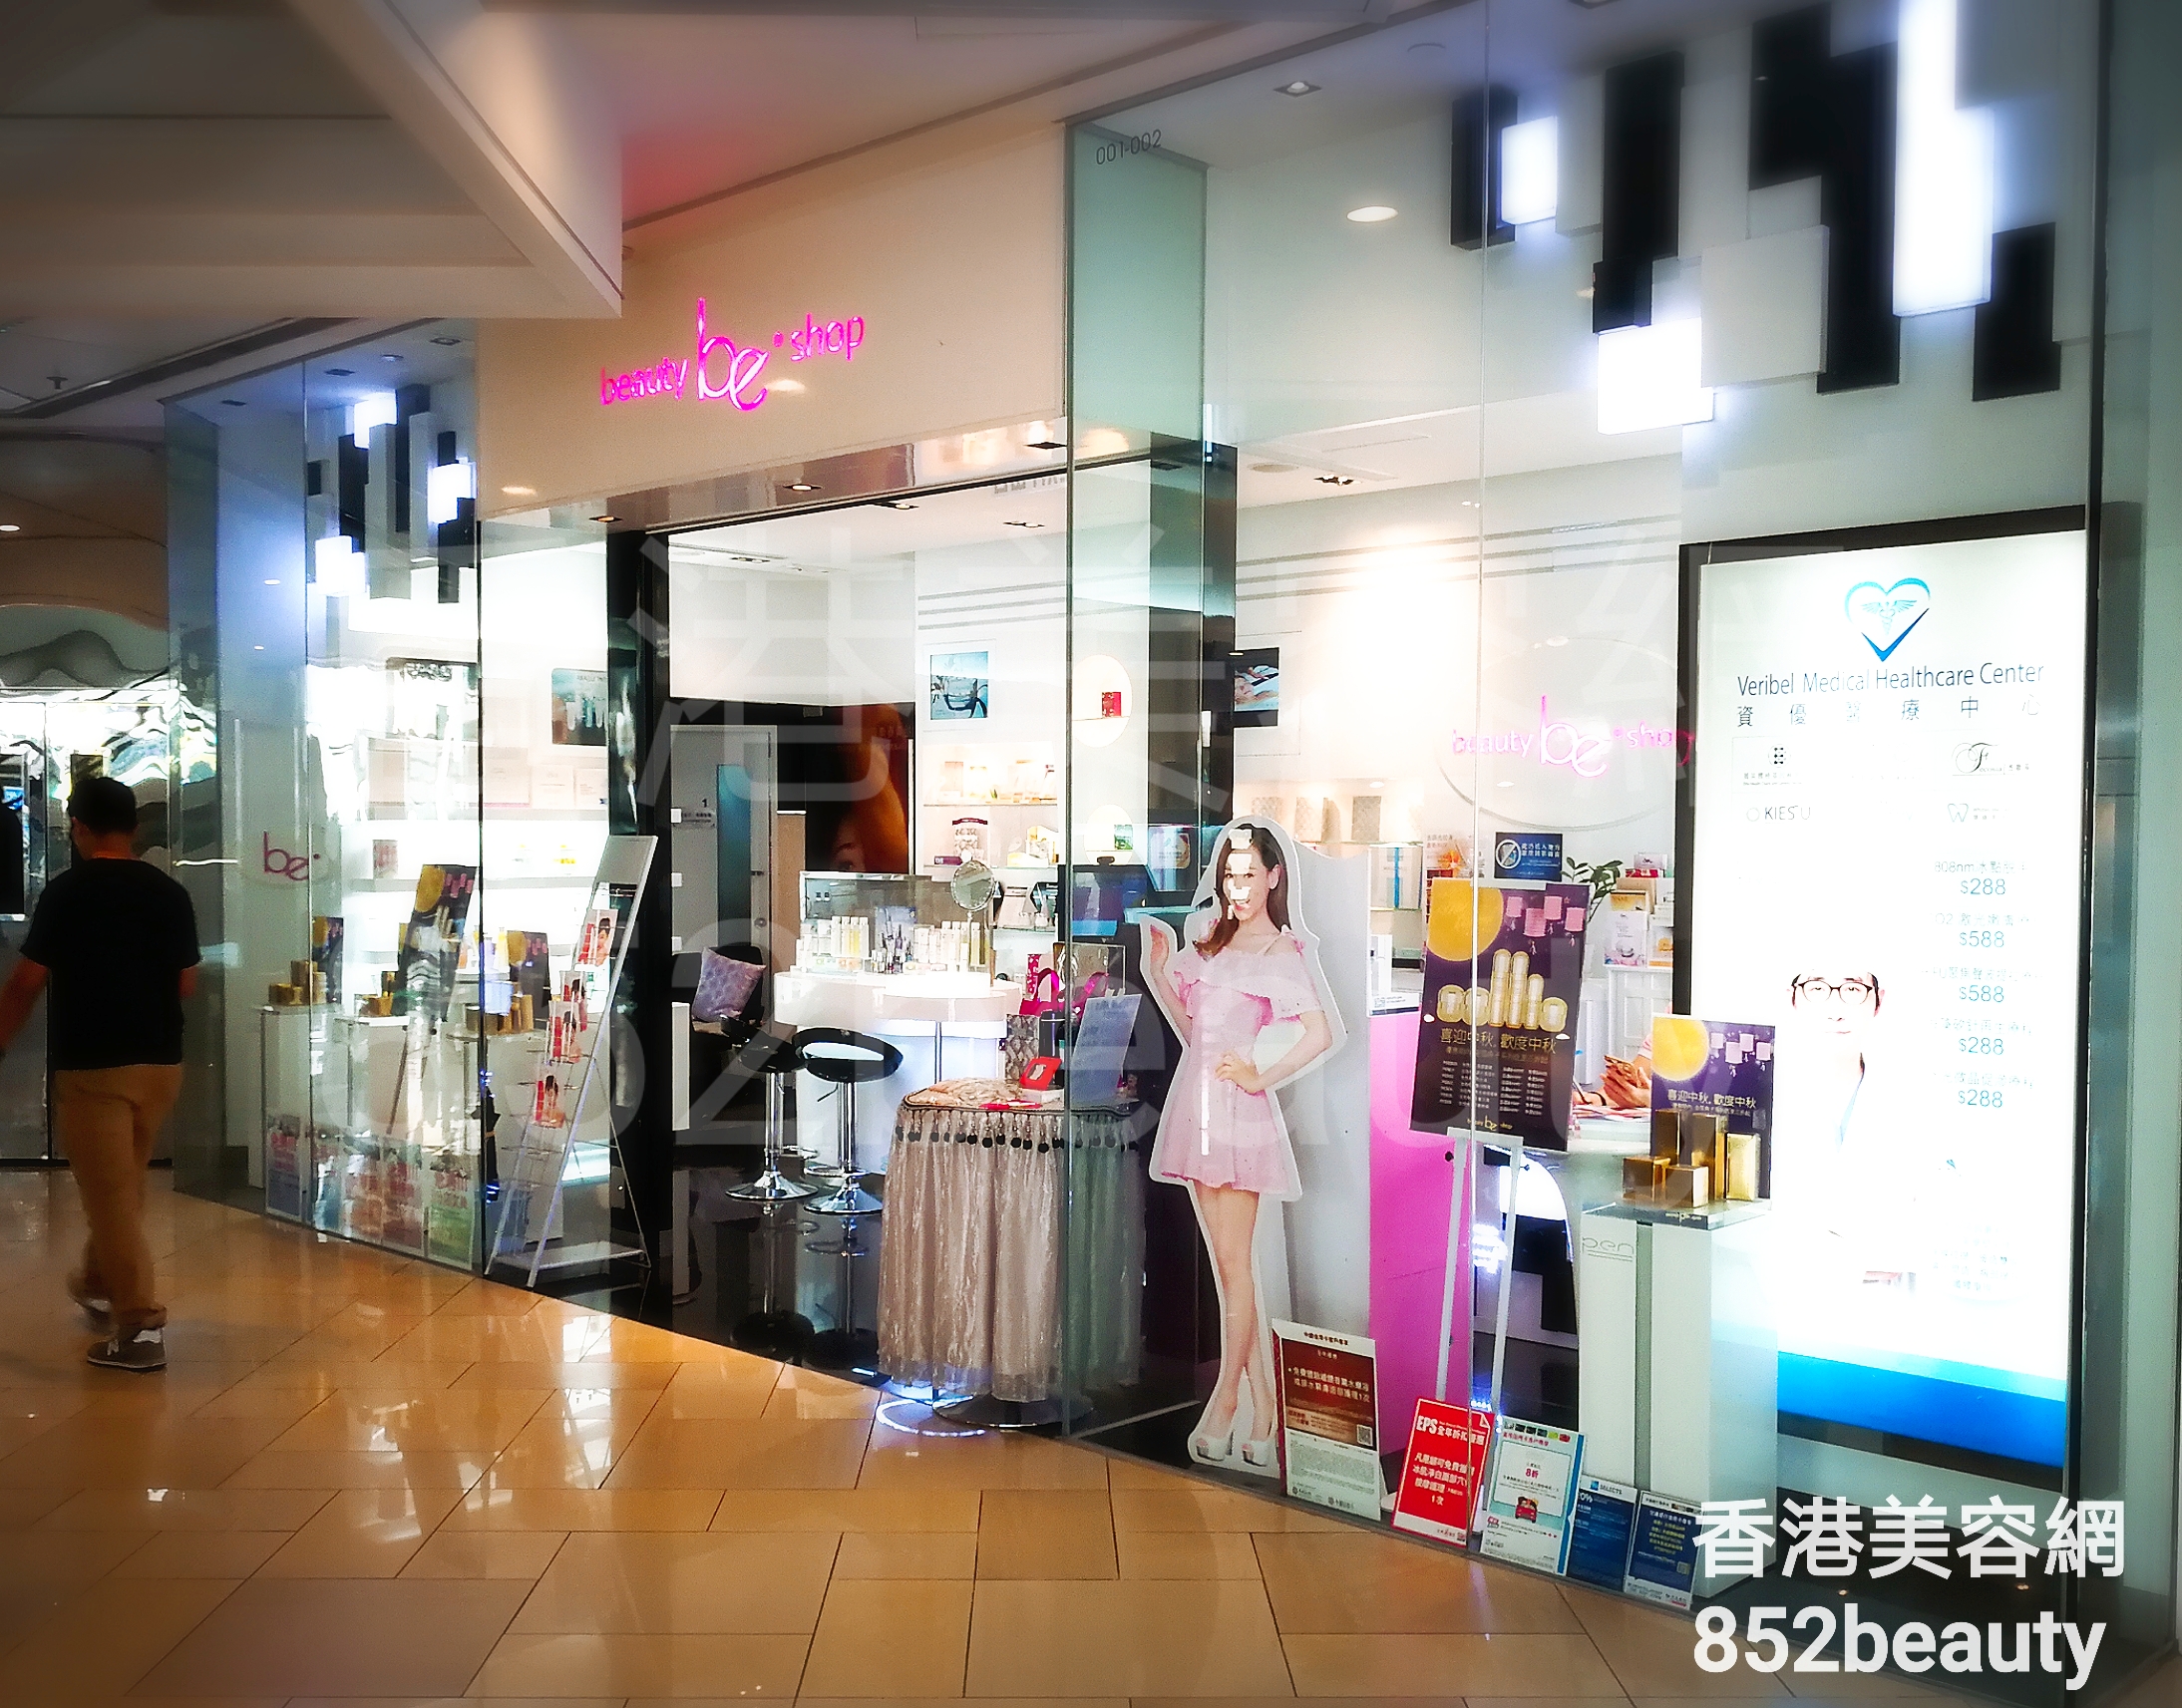 Eye Care: be beauty shop (港運城)